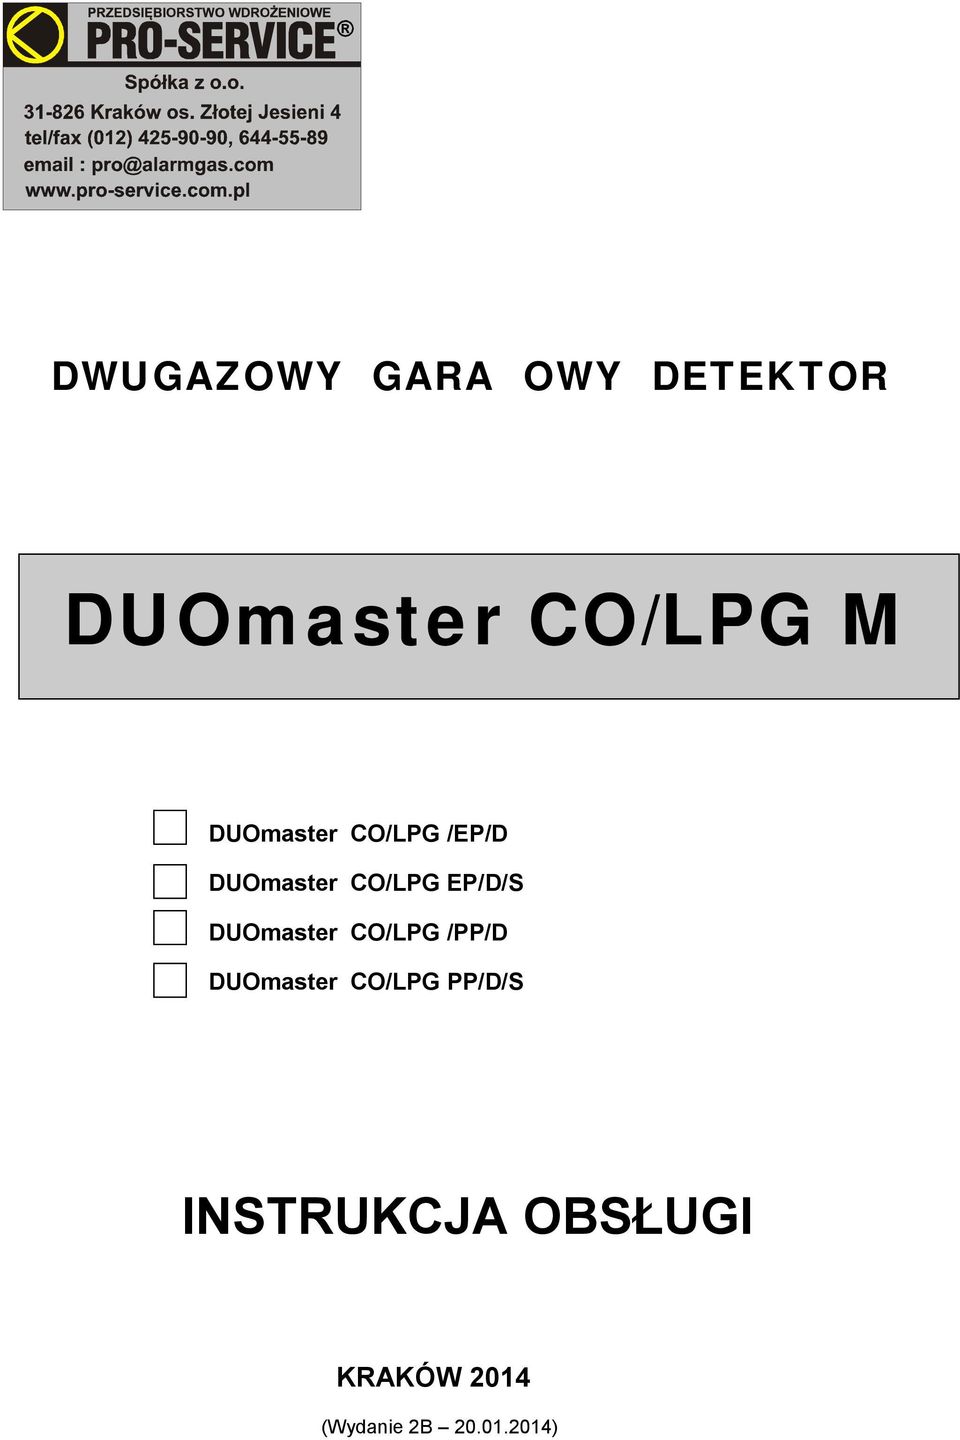 DUOmaster CO/LPG /PP/D DUOmaster CO/LPG PP/D/S